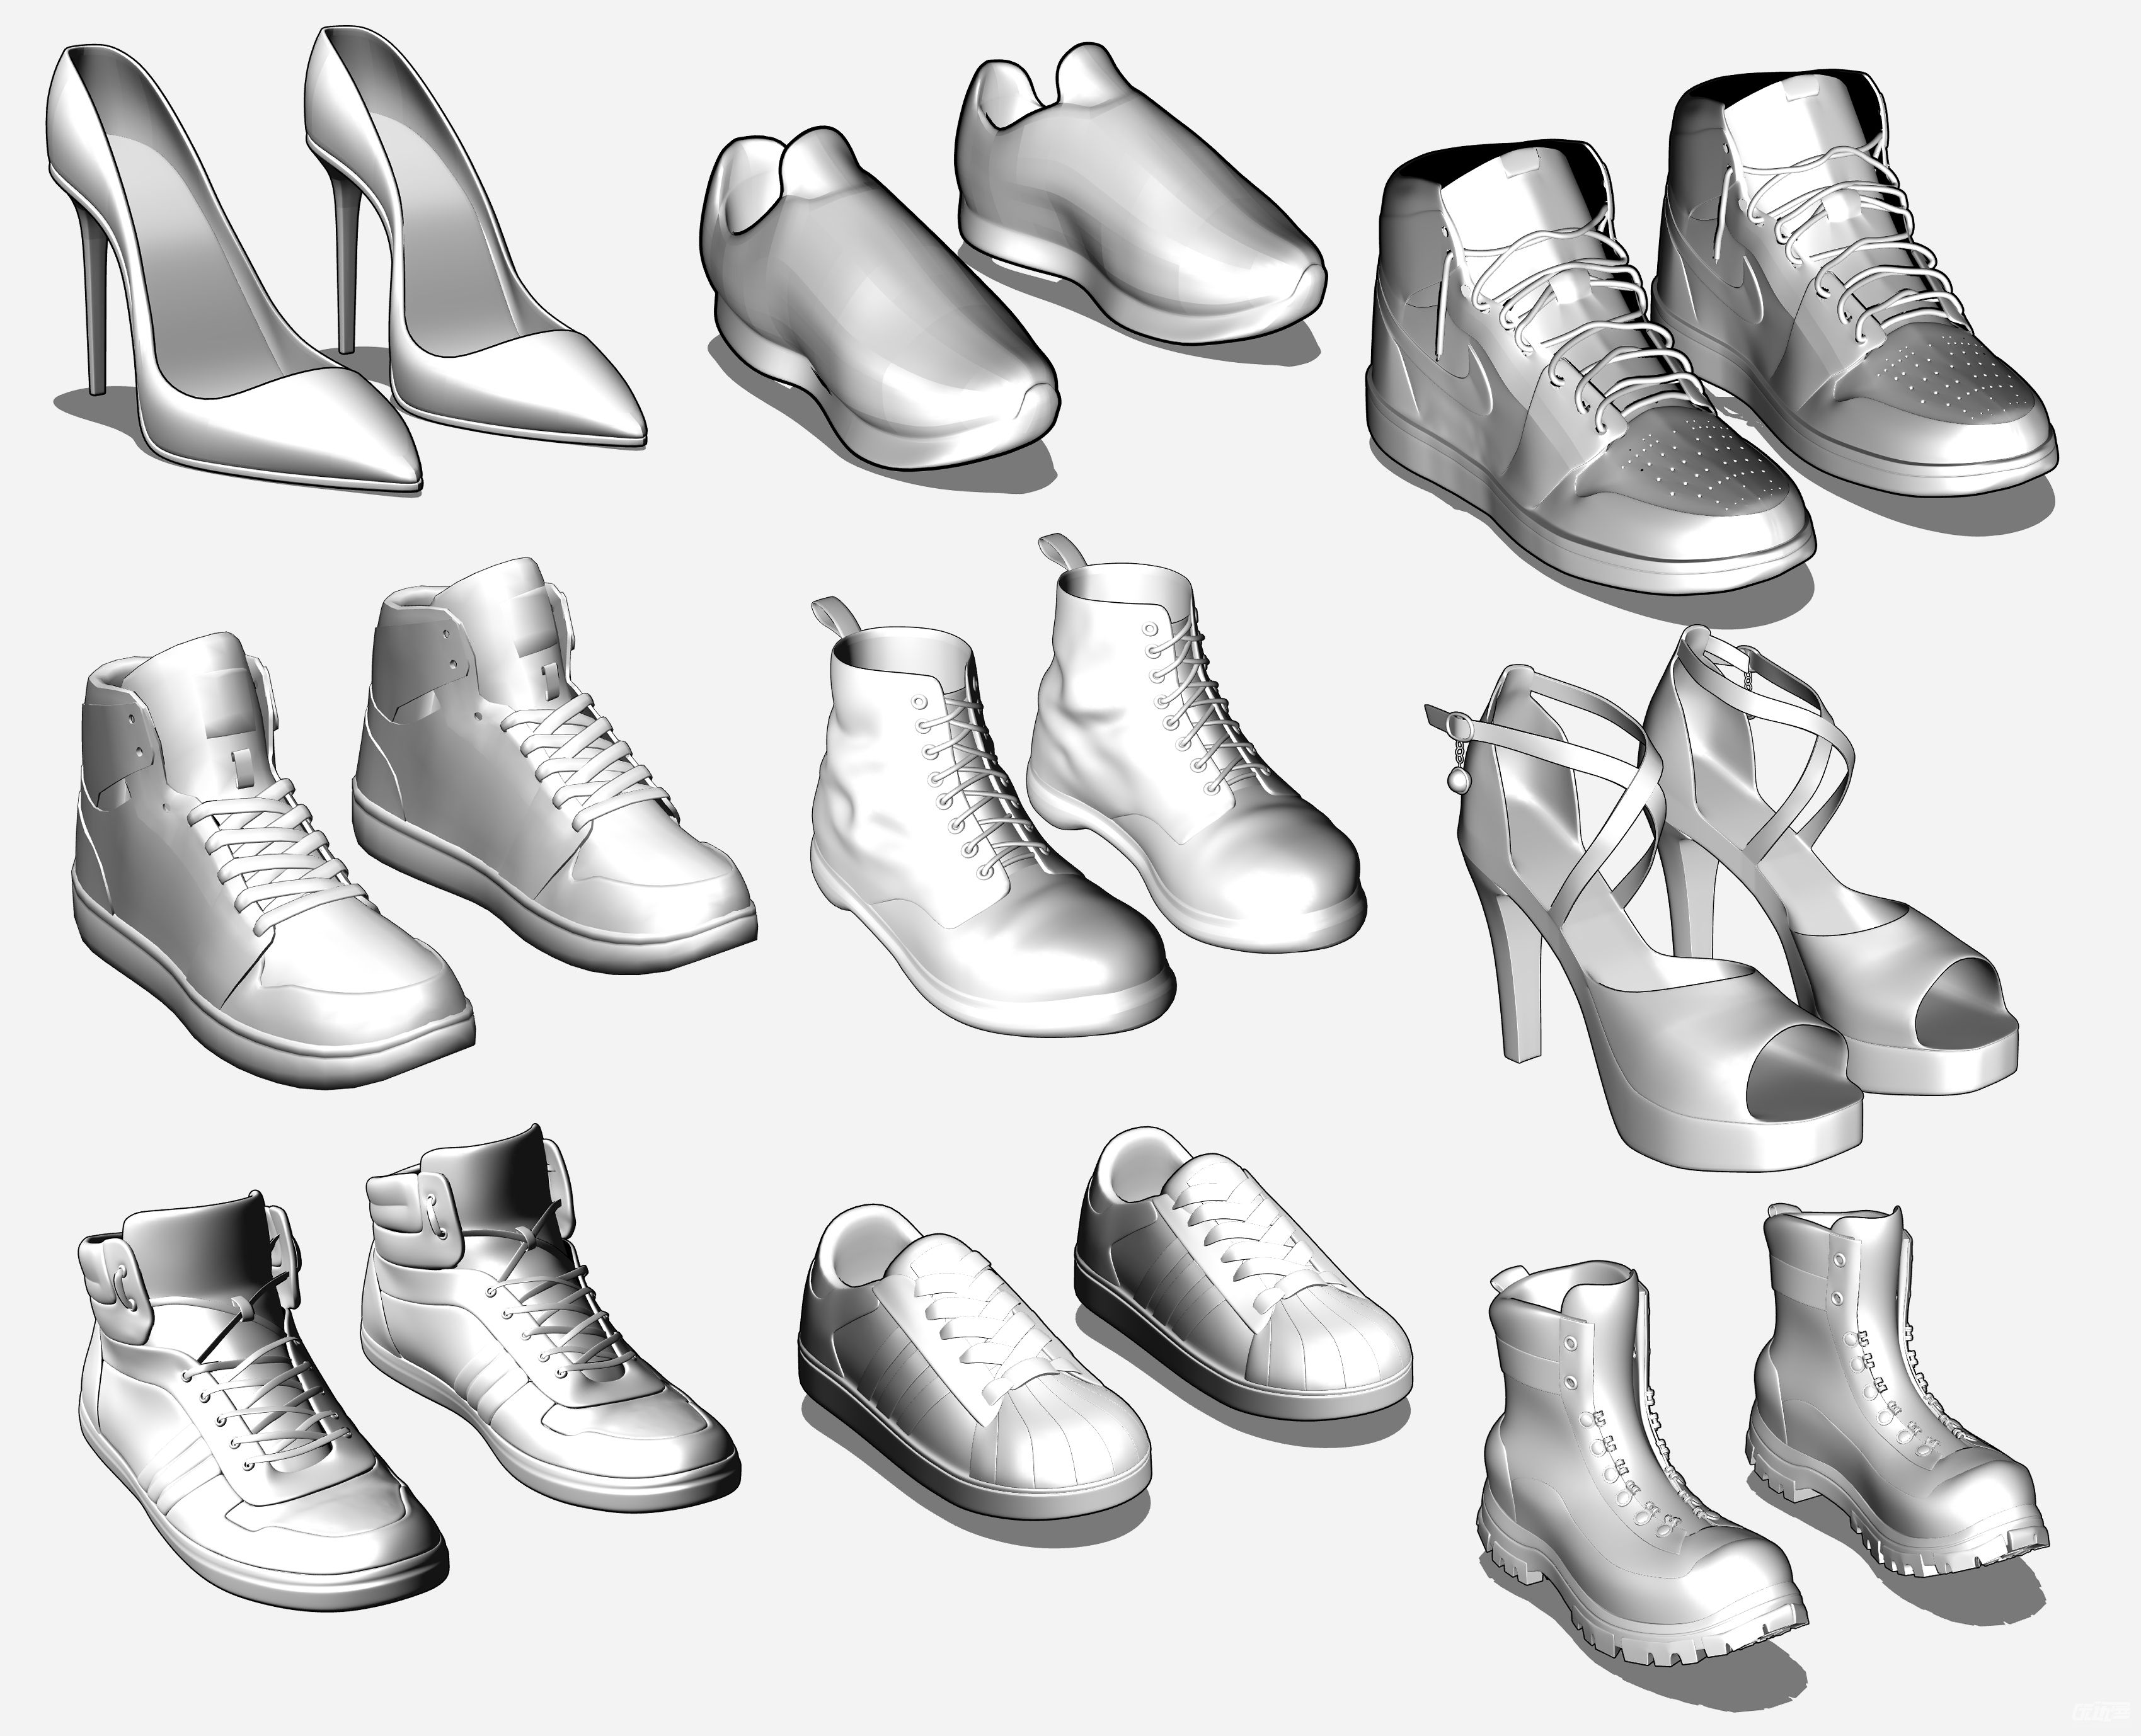 动漫脚与鞋子的画法 - 学院 - 摸鱼网 - Σ(っ °Д °;)っ 让世界更萌~ mooyuu.com